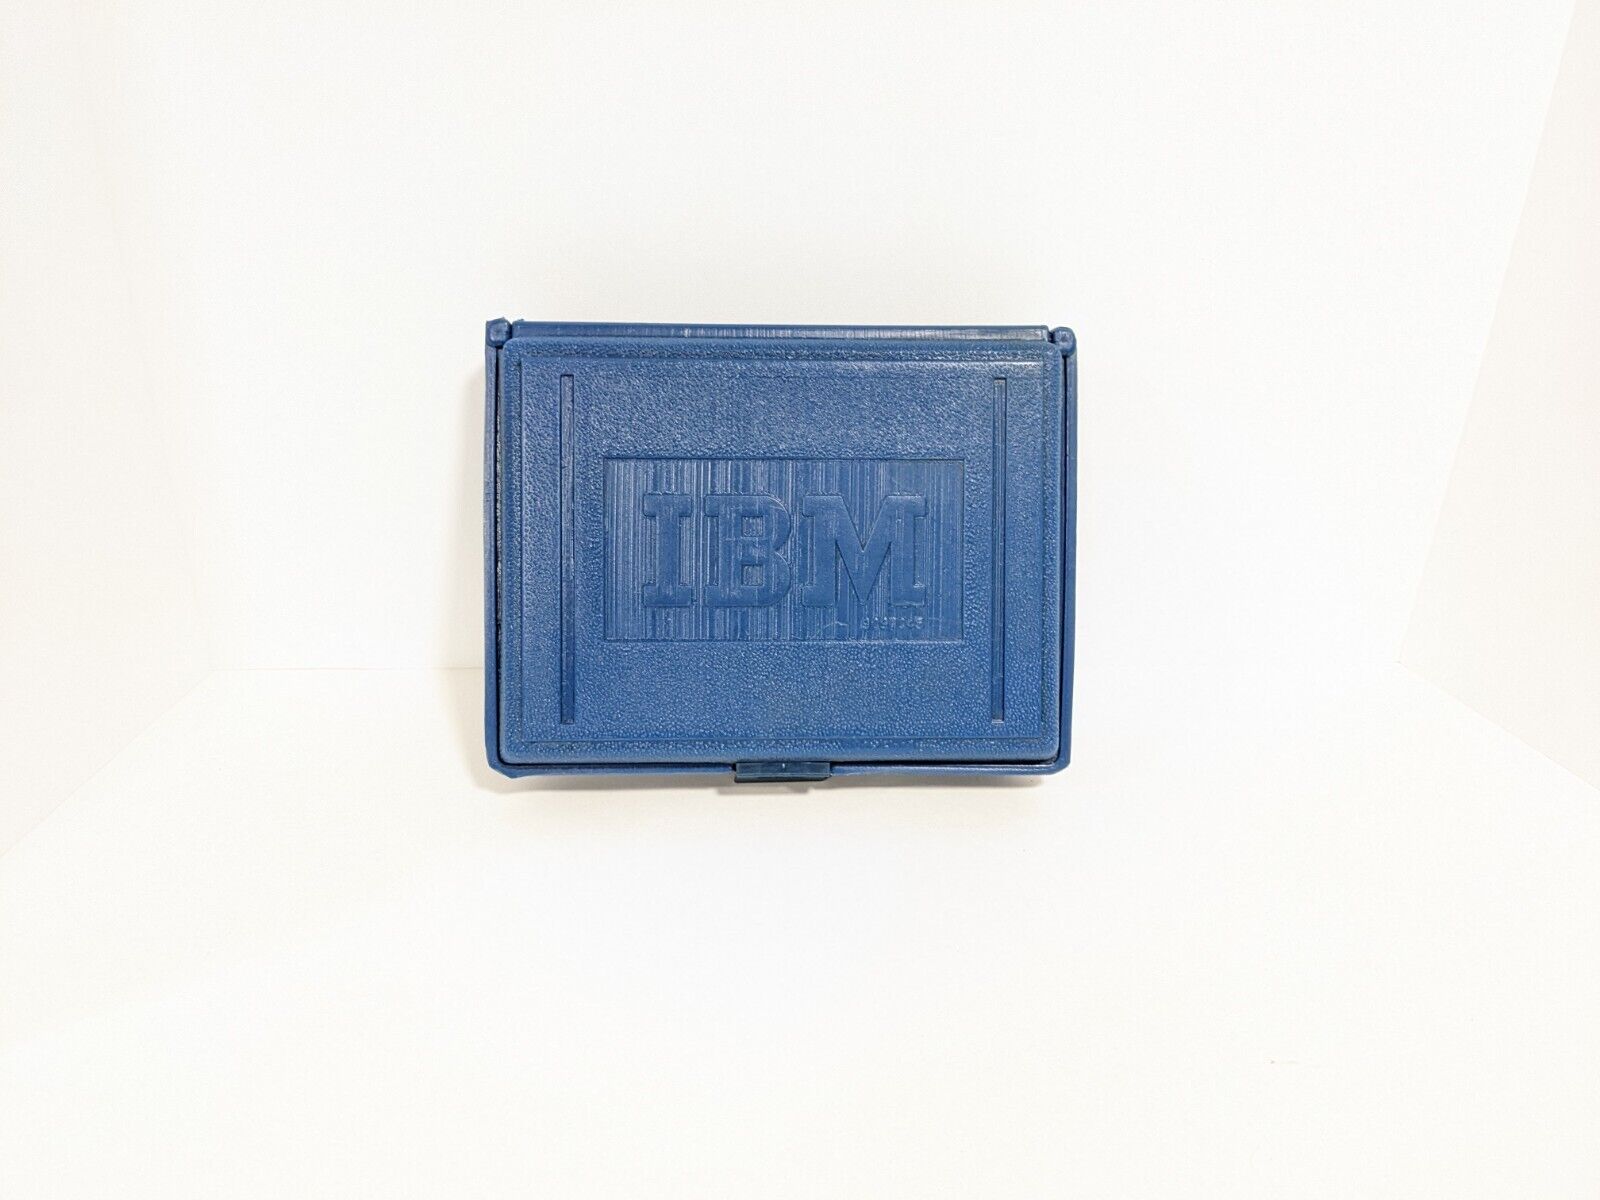 IBM Embossed Blow Mold Plastic Case Disk Vintage Computer